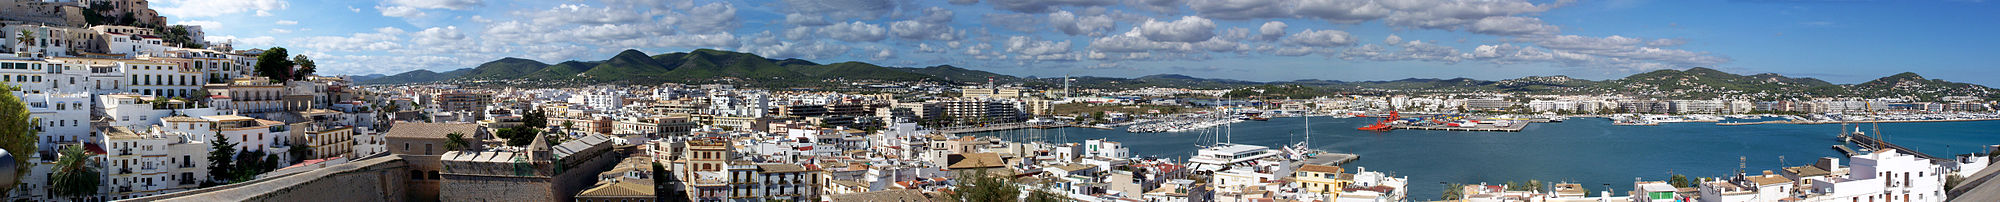 Panoramabild Eivissas: Links die Altstadt Dalt Vila, rechts der Hafen, Blickrichtung West bis Nord-Ost